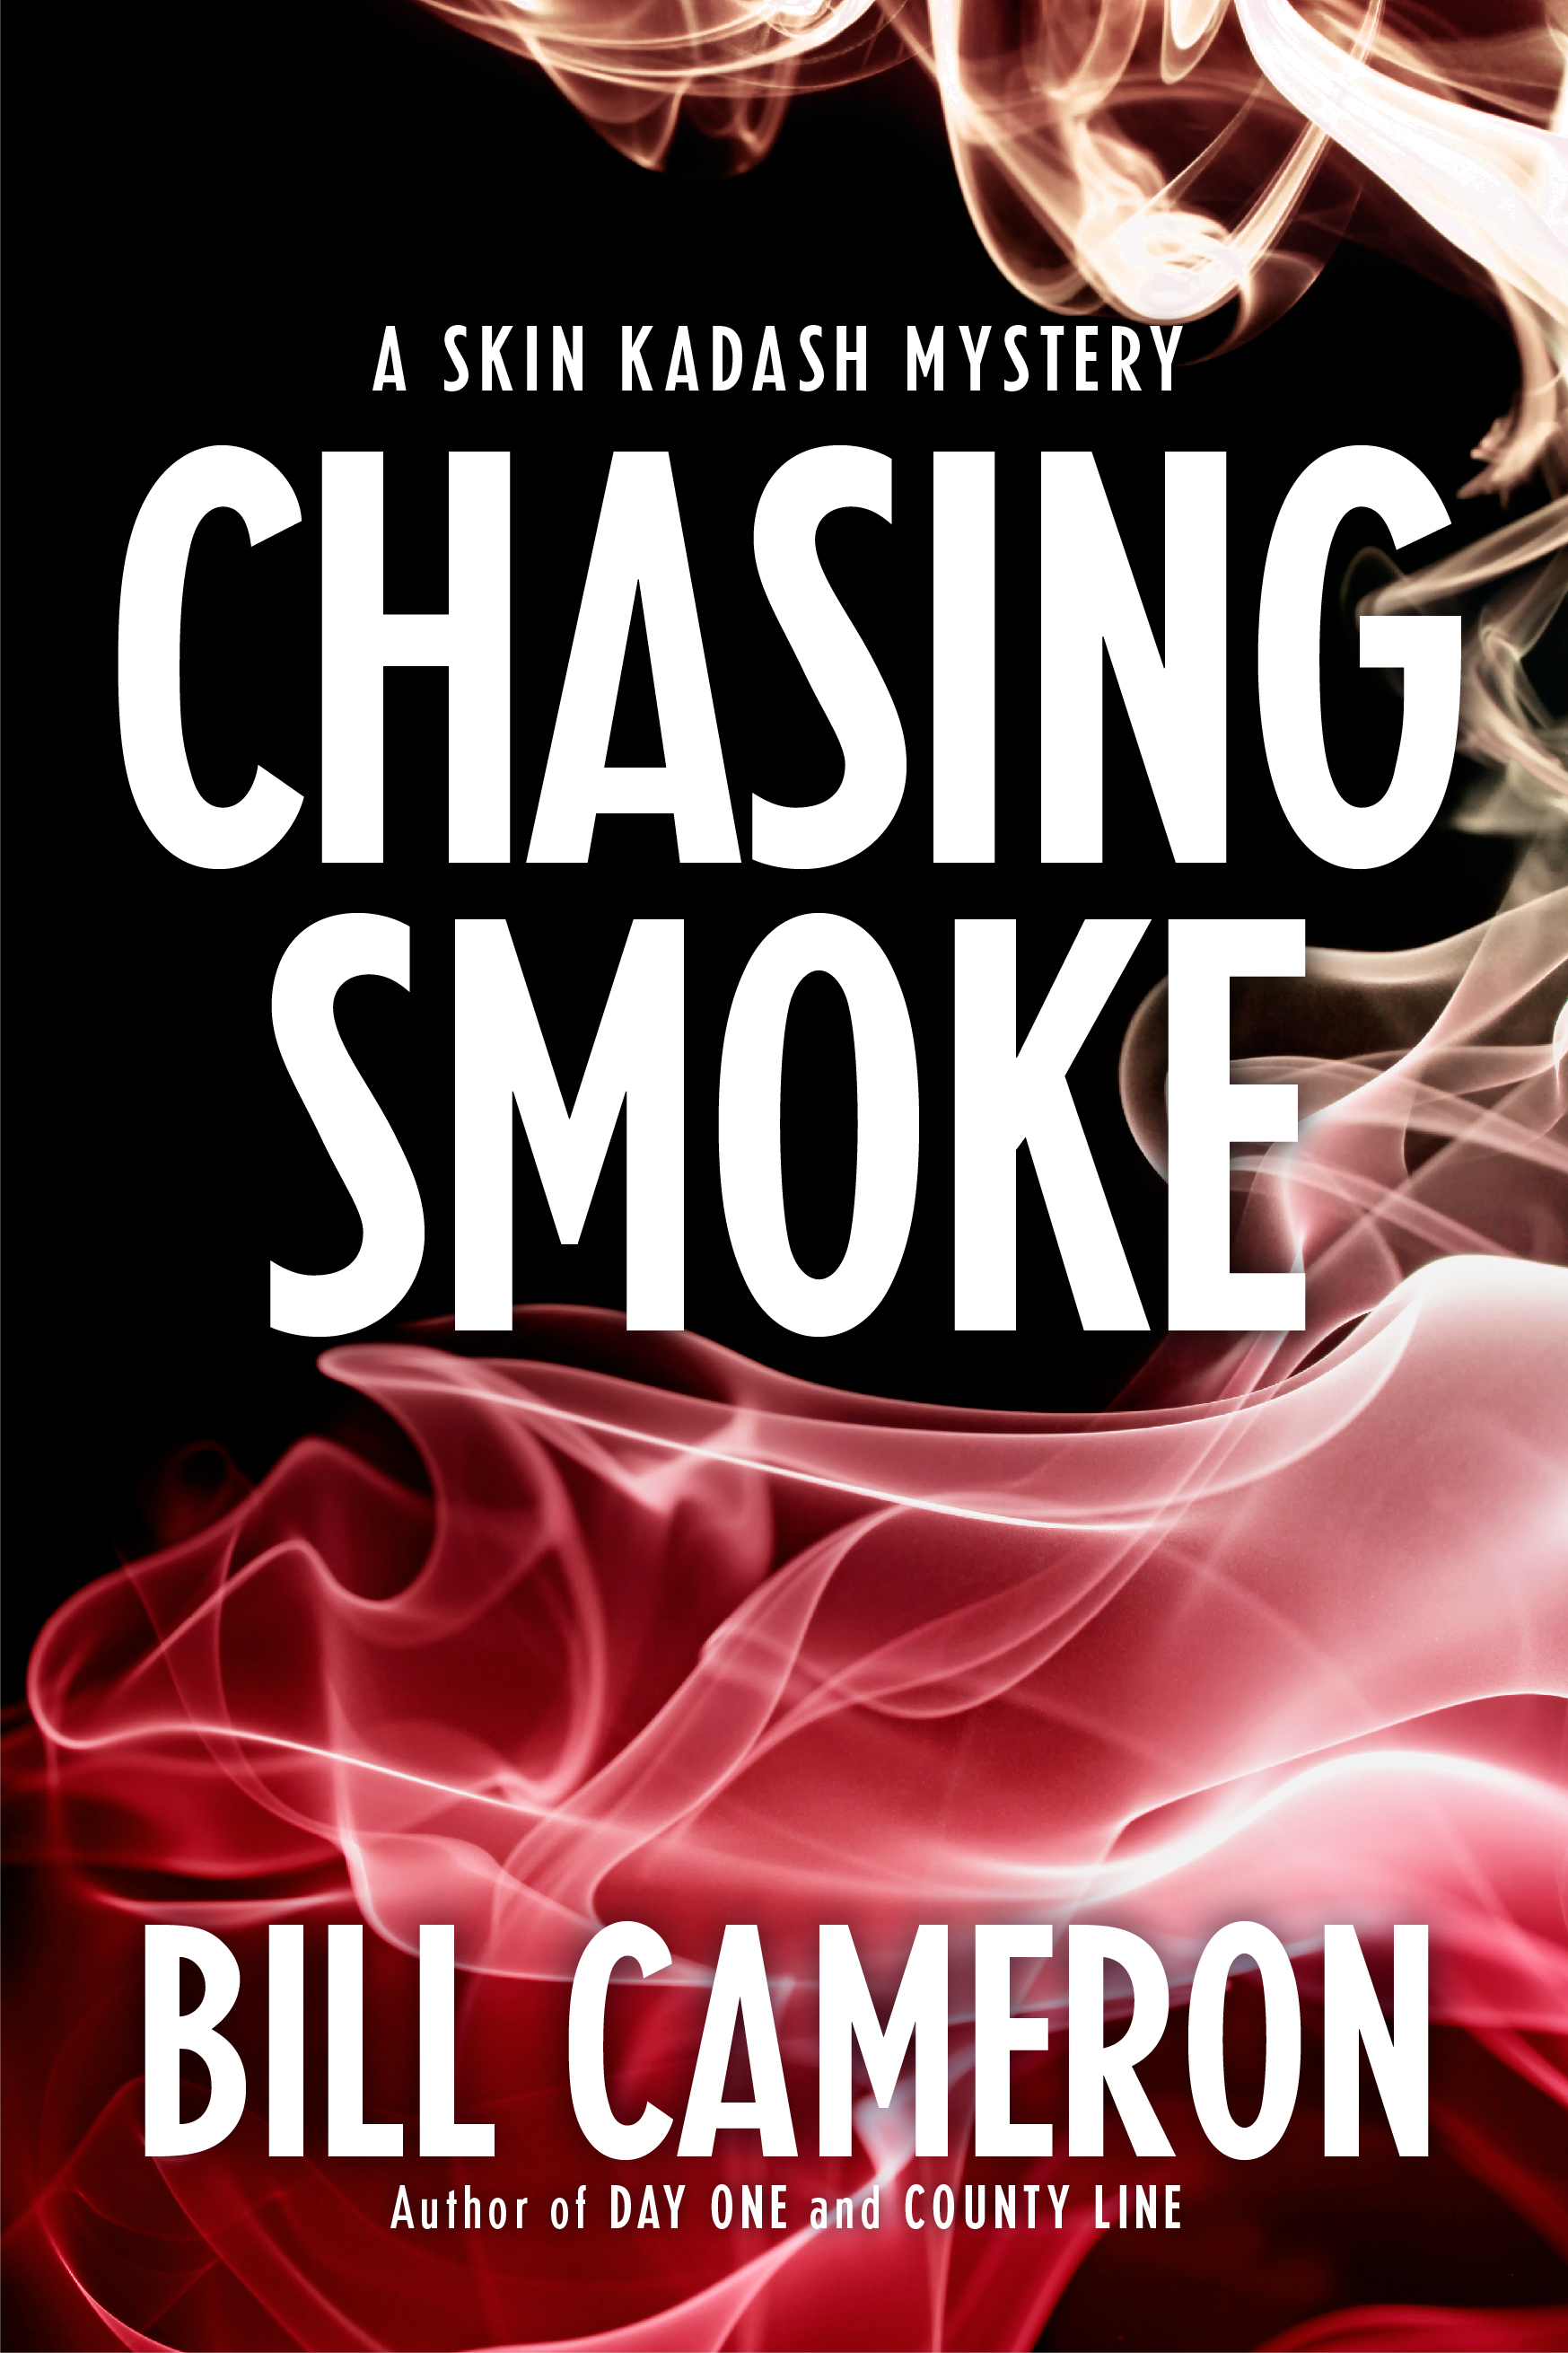 File:Chasing smoke 2012.jpg